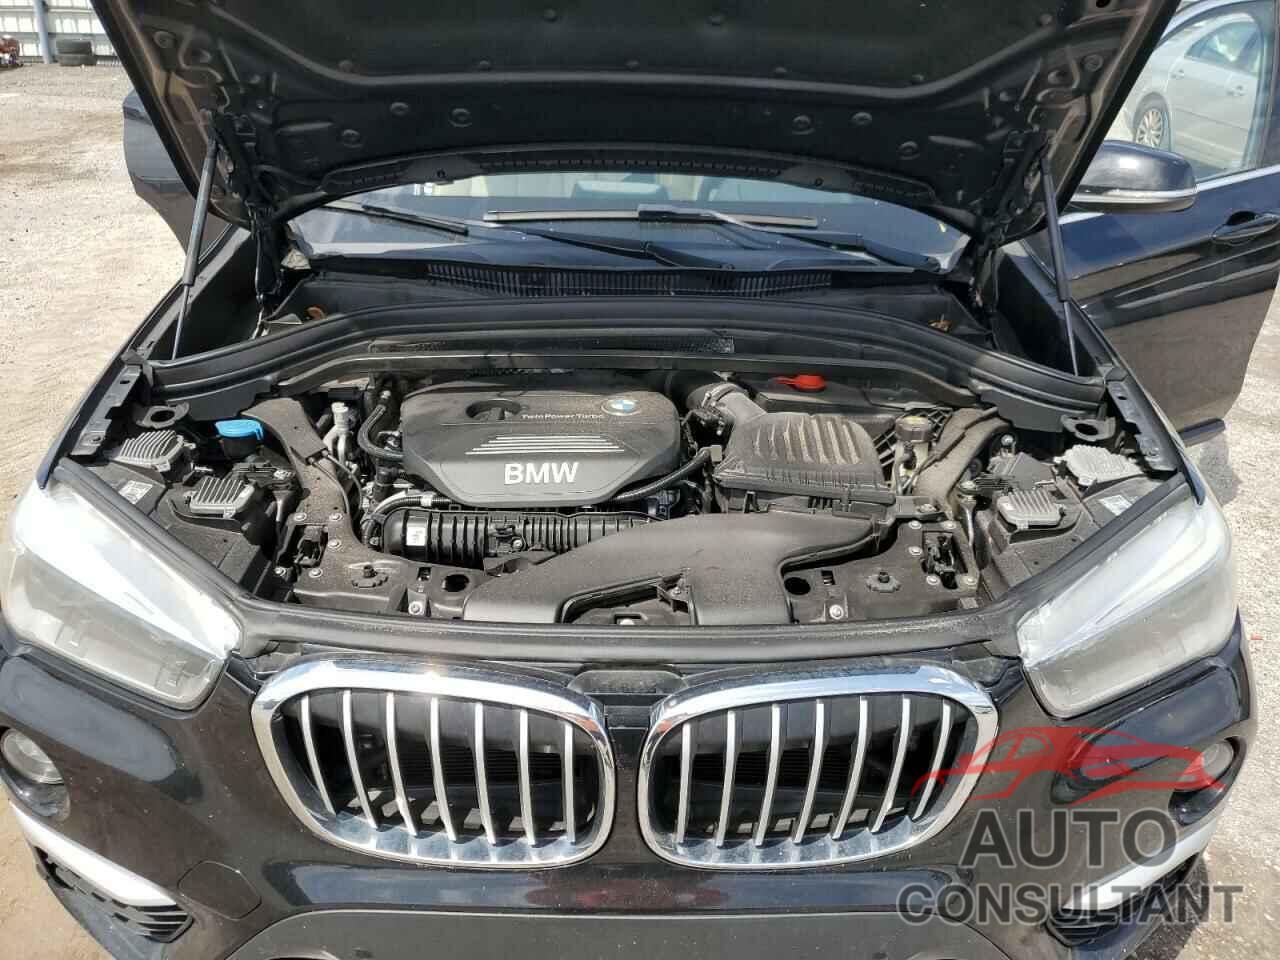 BMW X1 2017 - WBXHU7C30HP924627